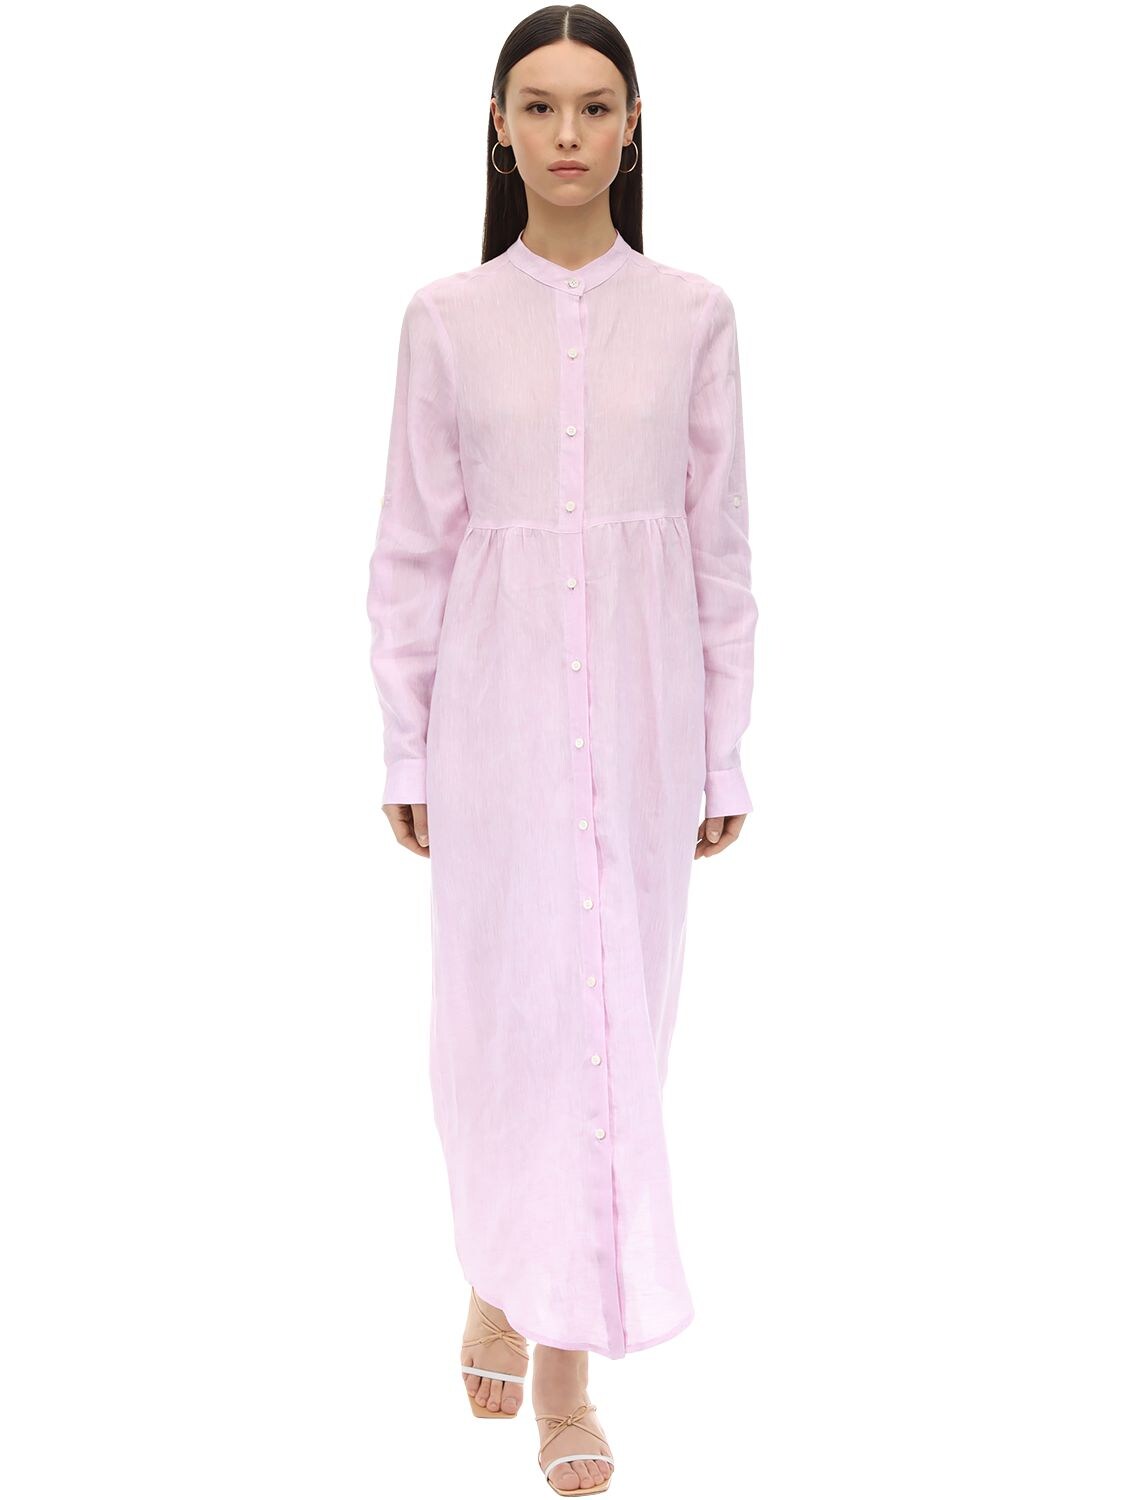 Gioia Bini Emma Long Linen Shirt Dress In Pink